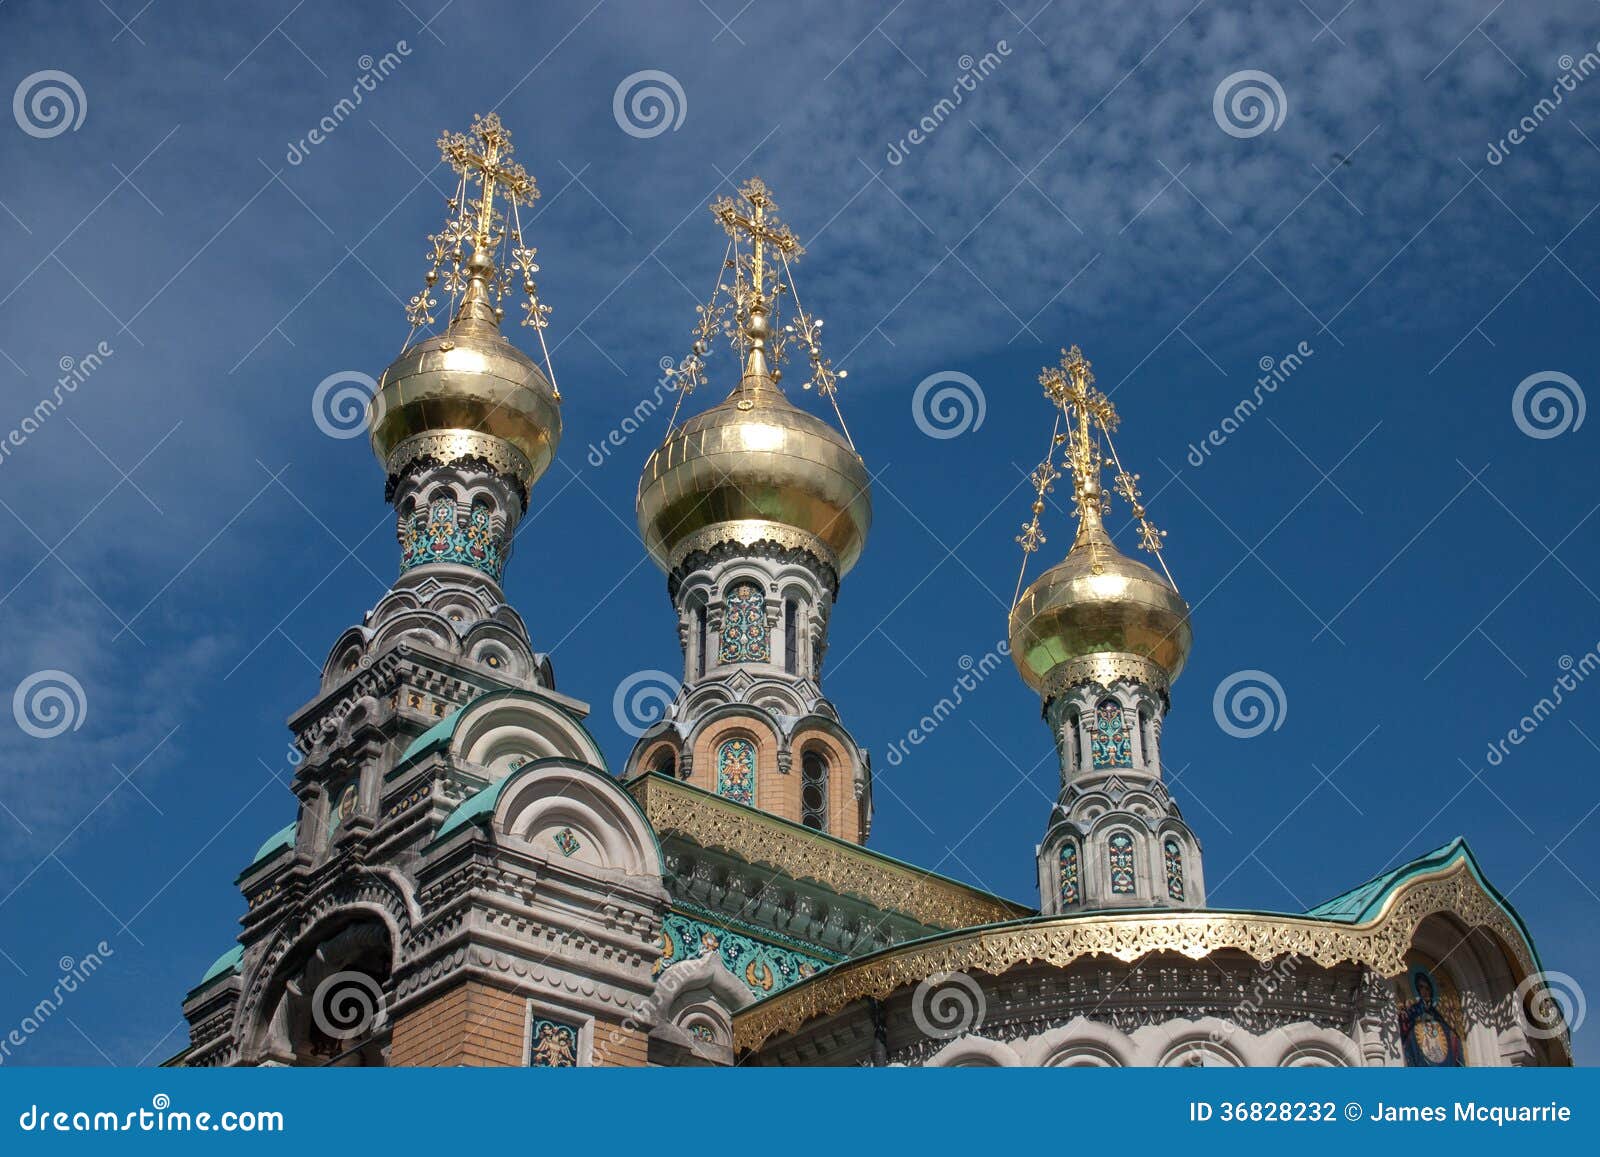 darmstadt russian church